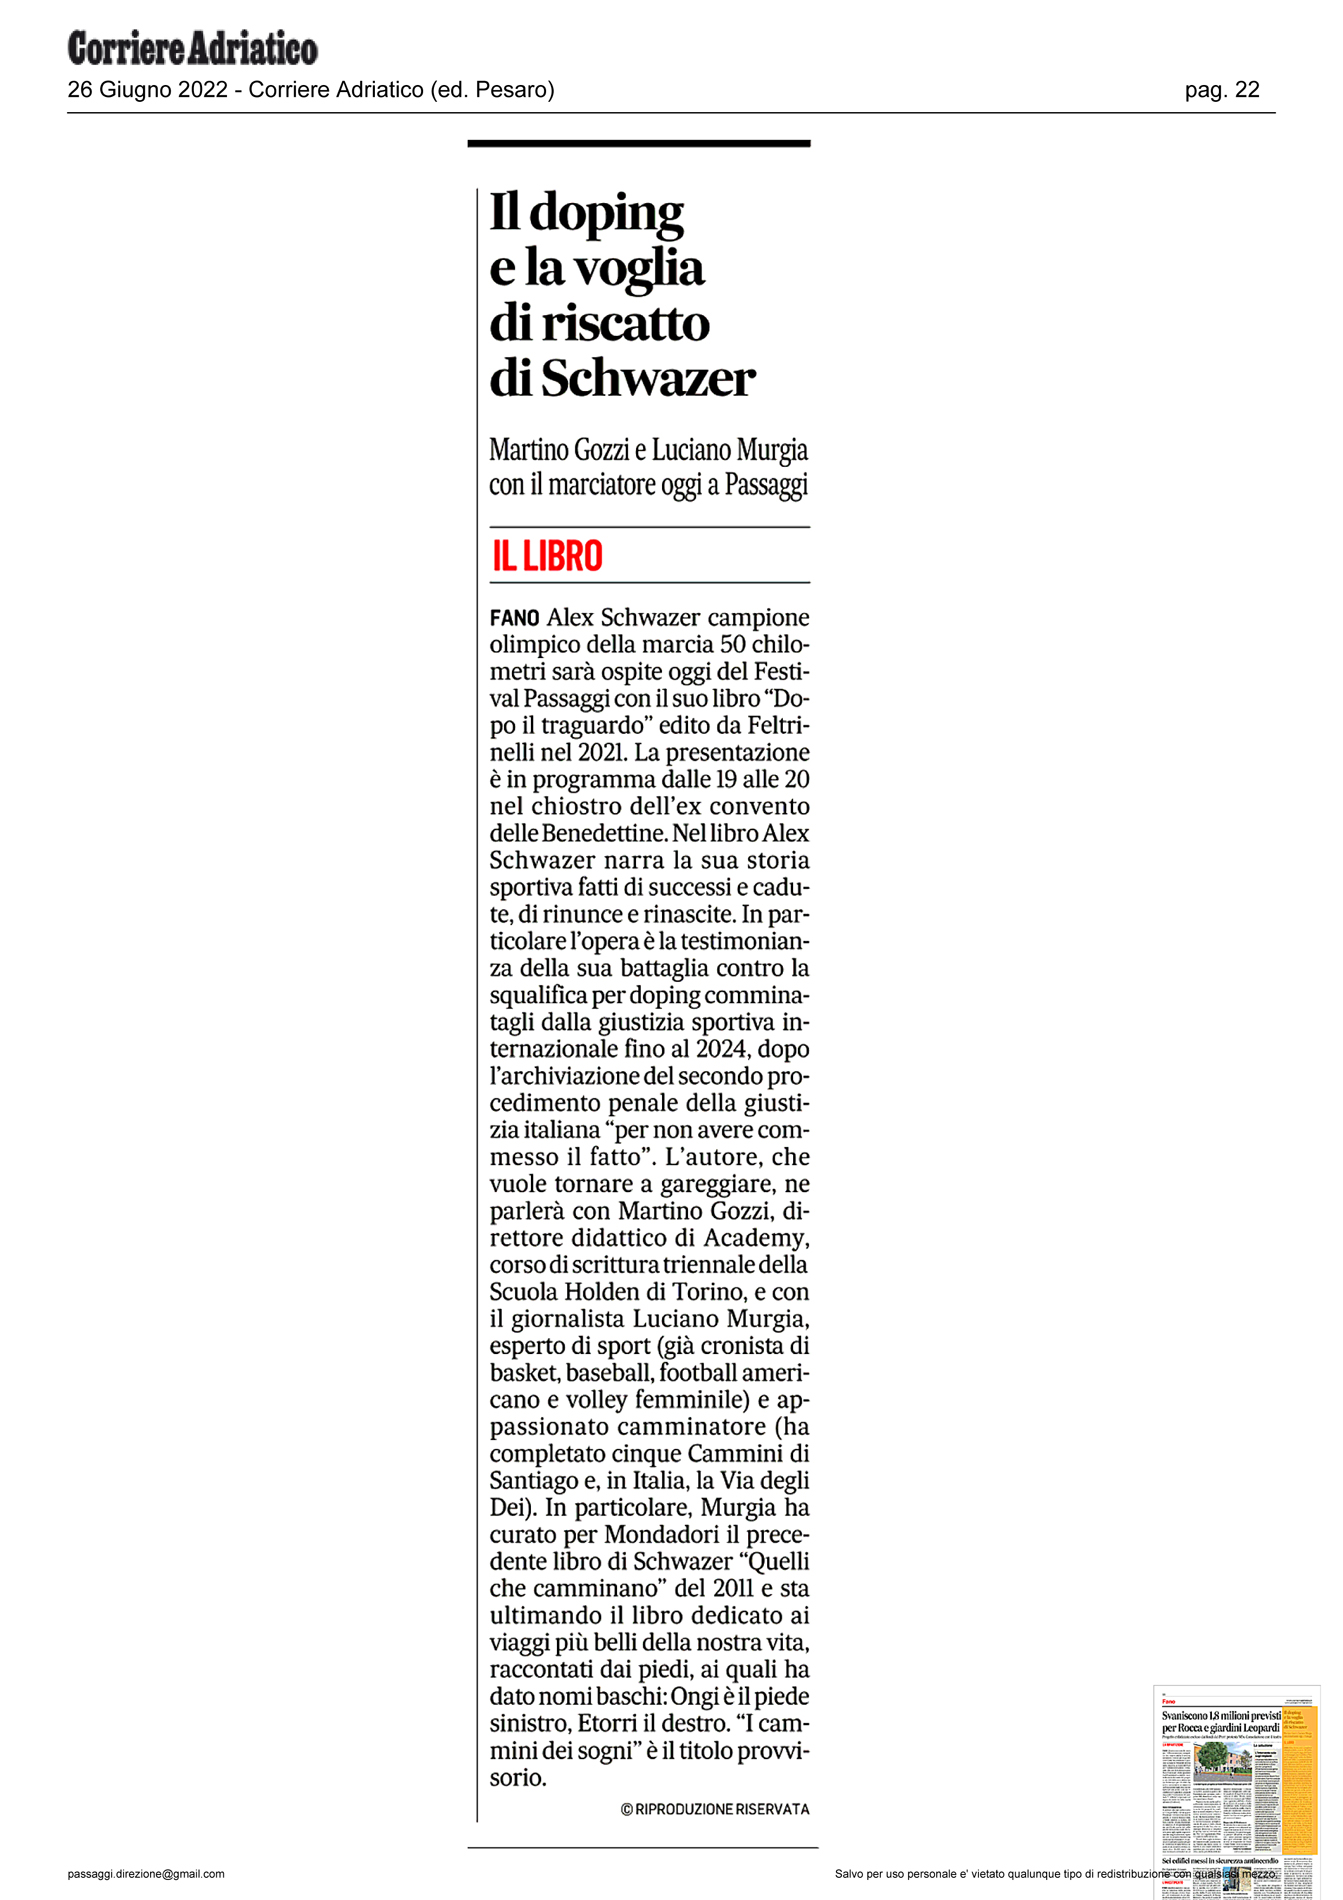 Corriere_Adriatico_il-doping-e-la-voglia-di-riscatto-di-Schwazer